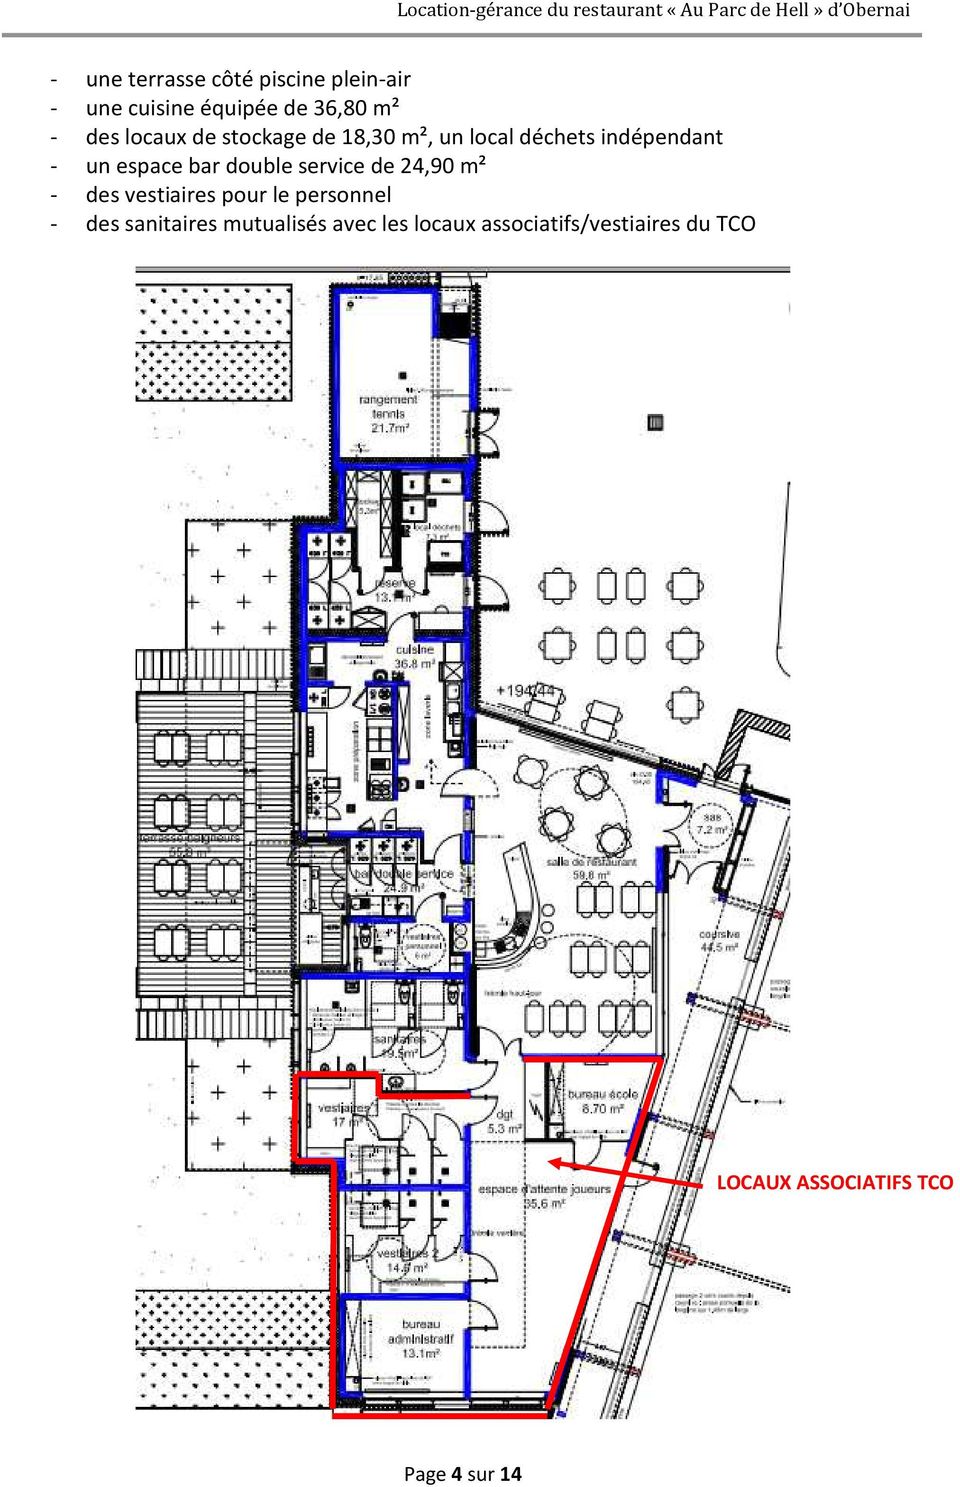 double service de 24,90 m² - des vestiaires pour le personnel - des sanitaires